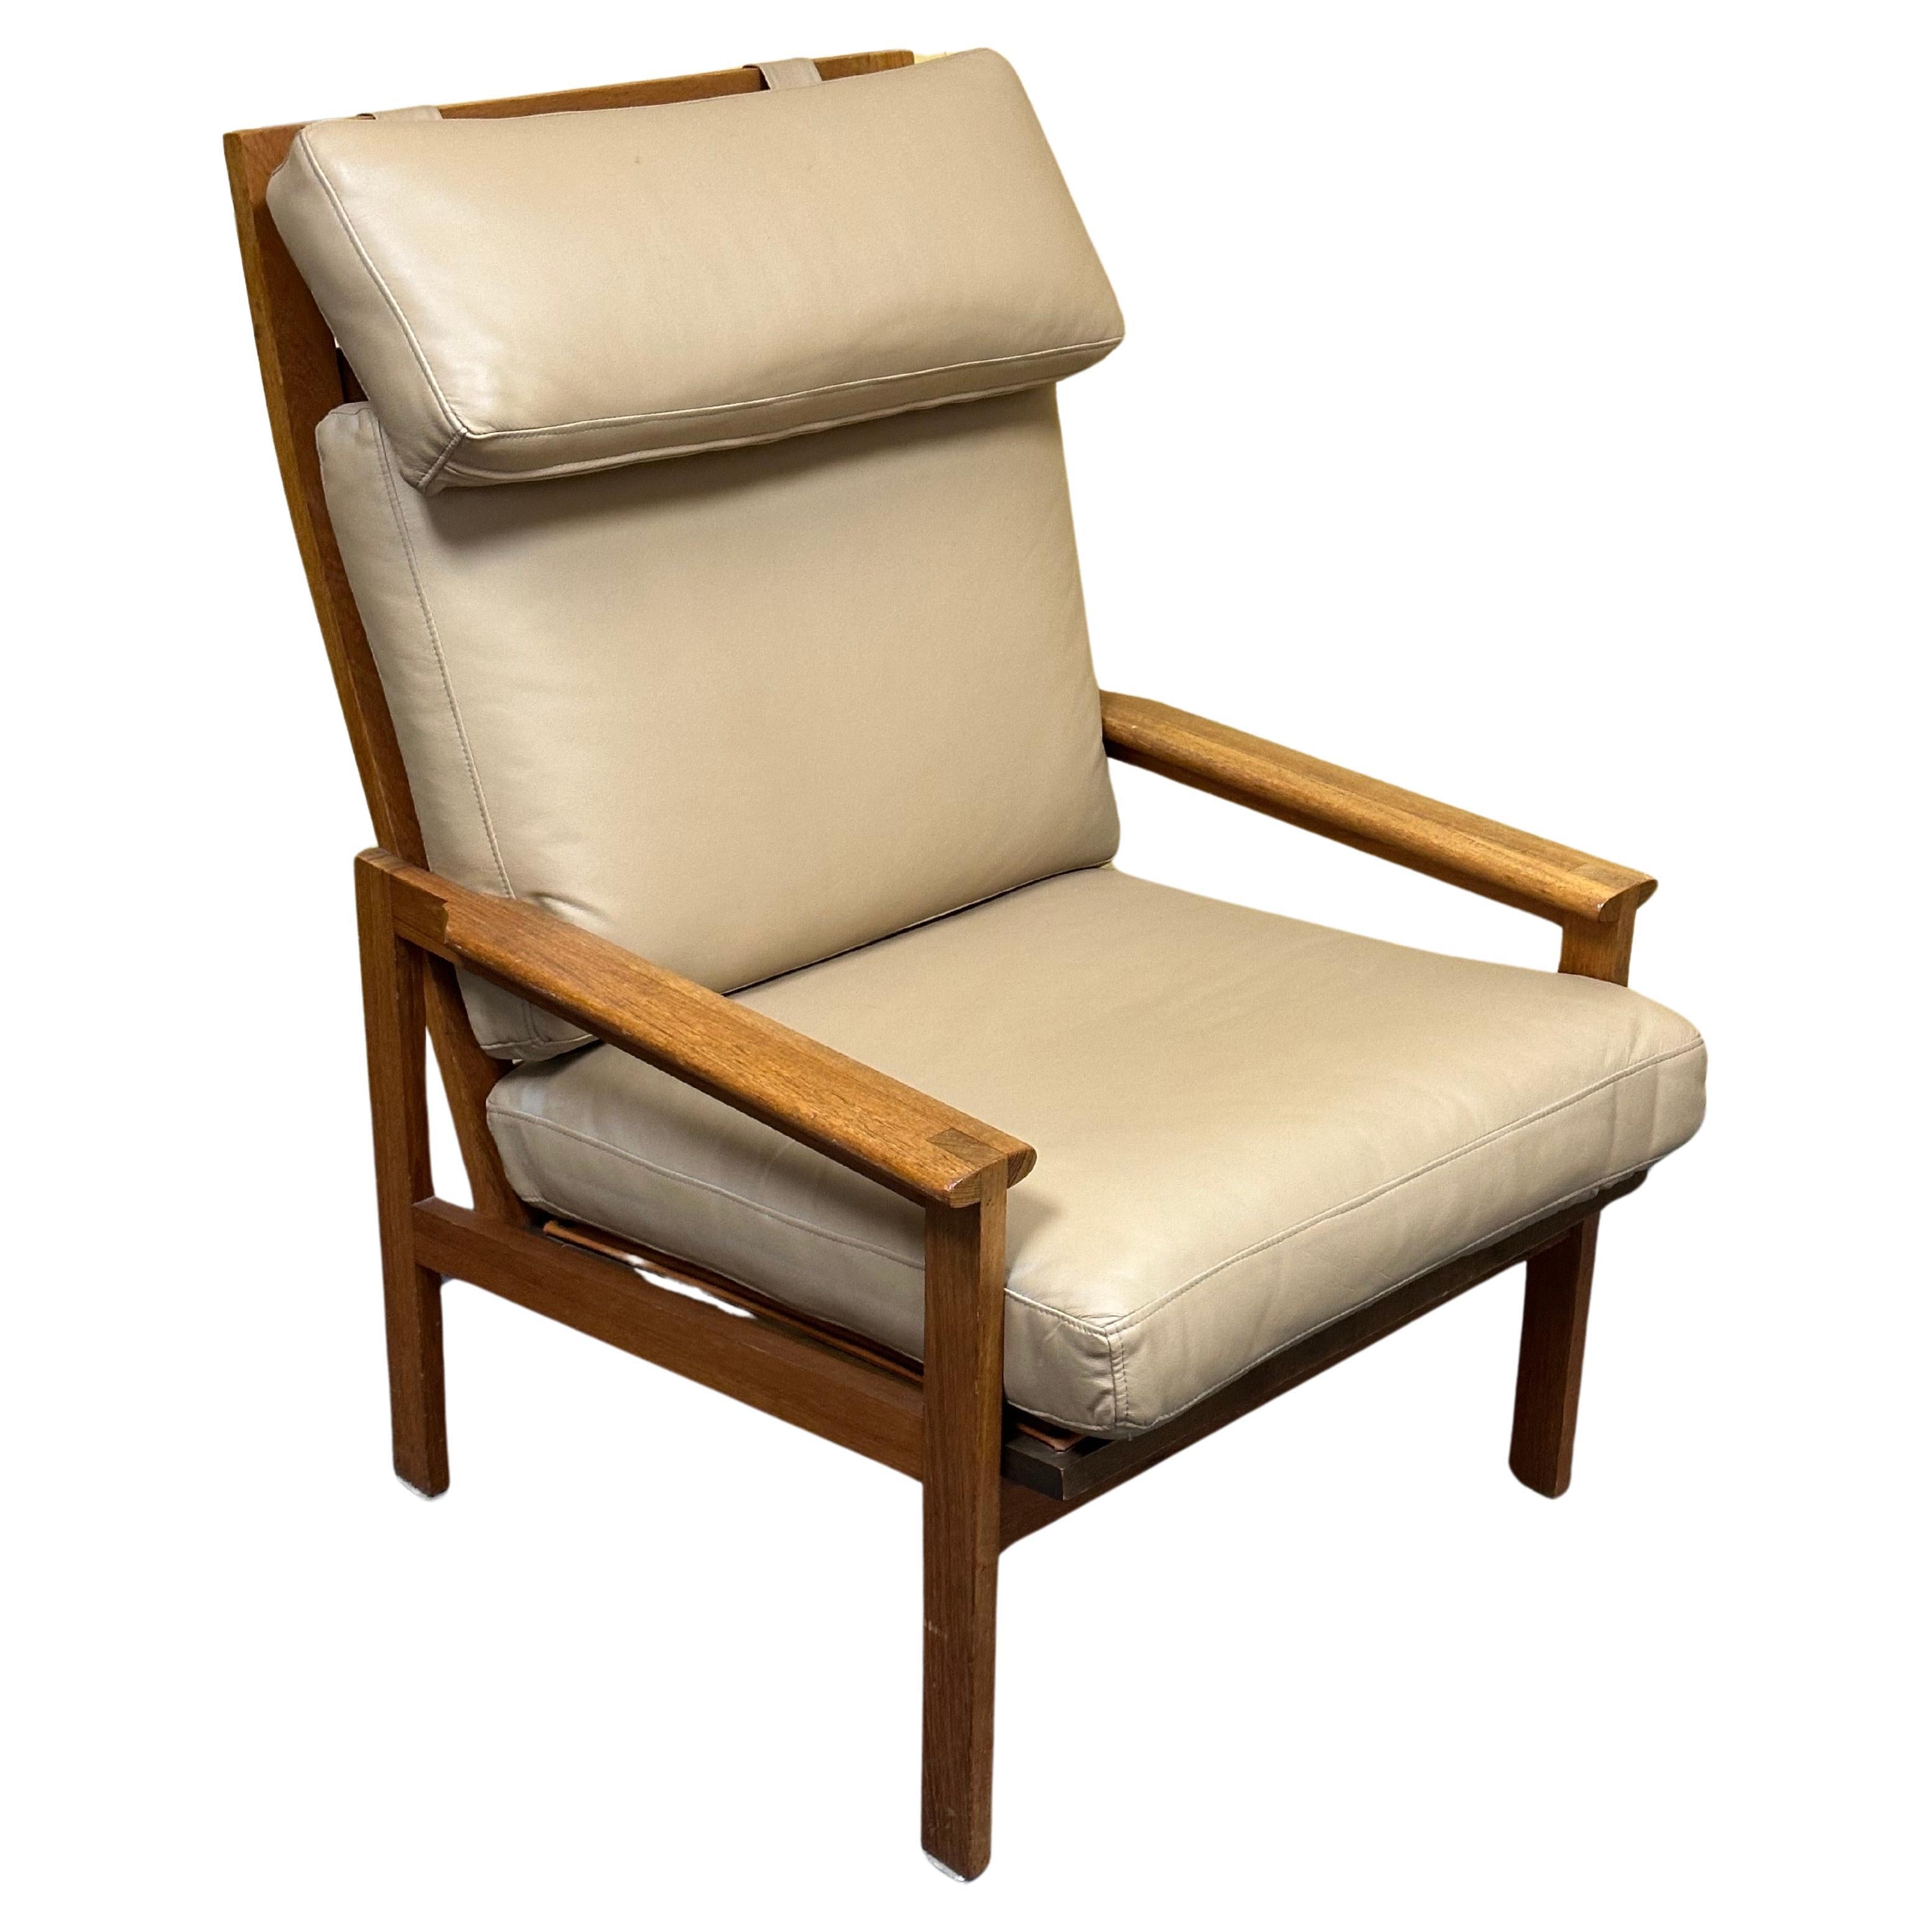 Auffälliger moderner dänischer Sessel aus massivem Teakholz und Leder mit hoher Rückenlehne von Niels Eilersen, ca. 1970er Jahre. Der Stuhl ist in sehr gutem Vintage-Zustand und misst 26,5 